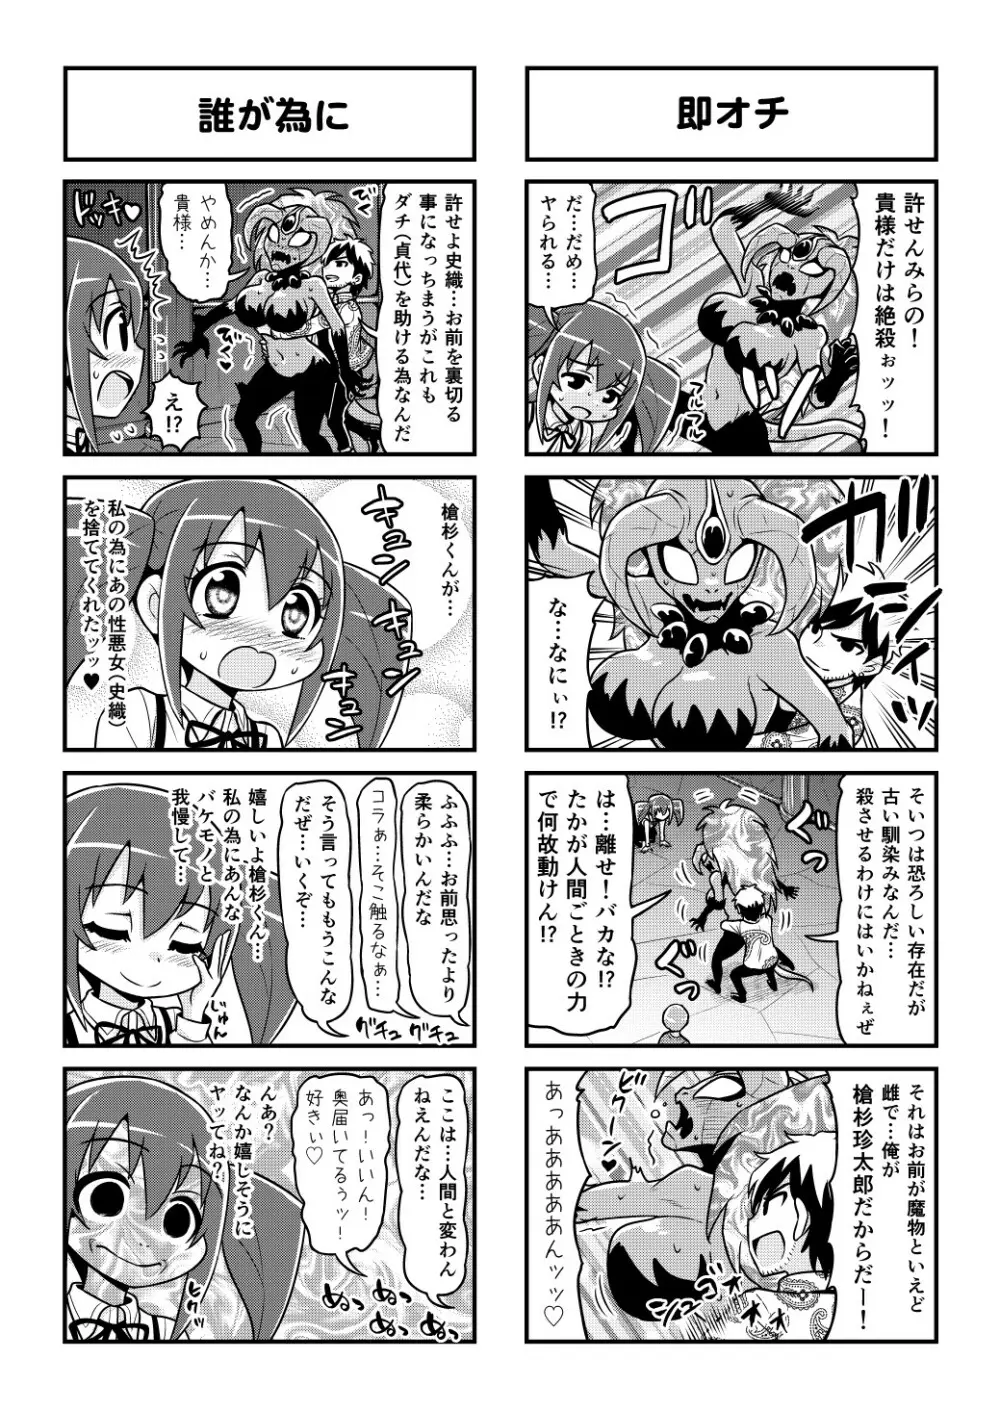 のんきBOY 1-52 - page423